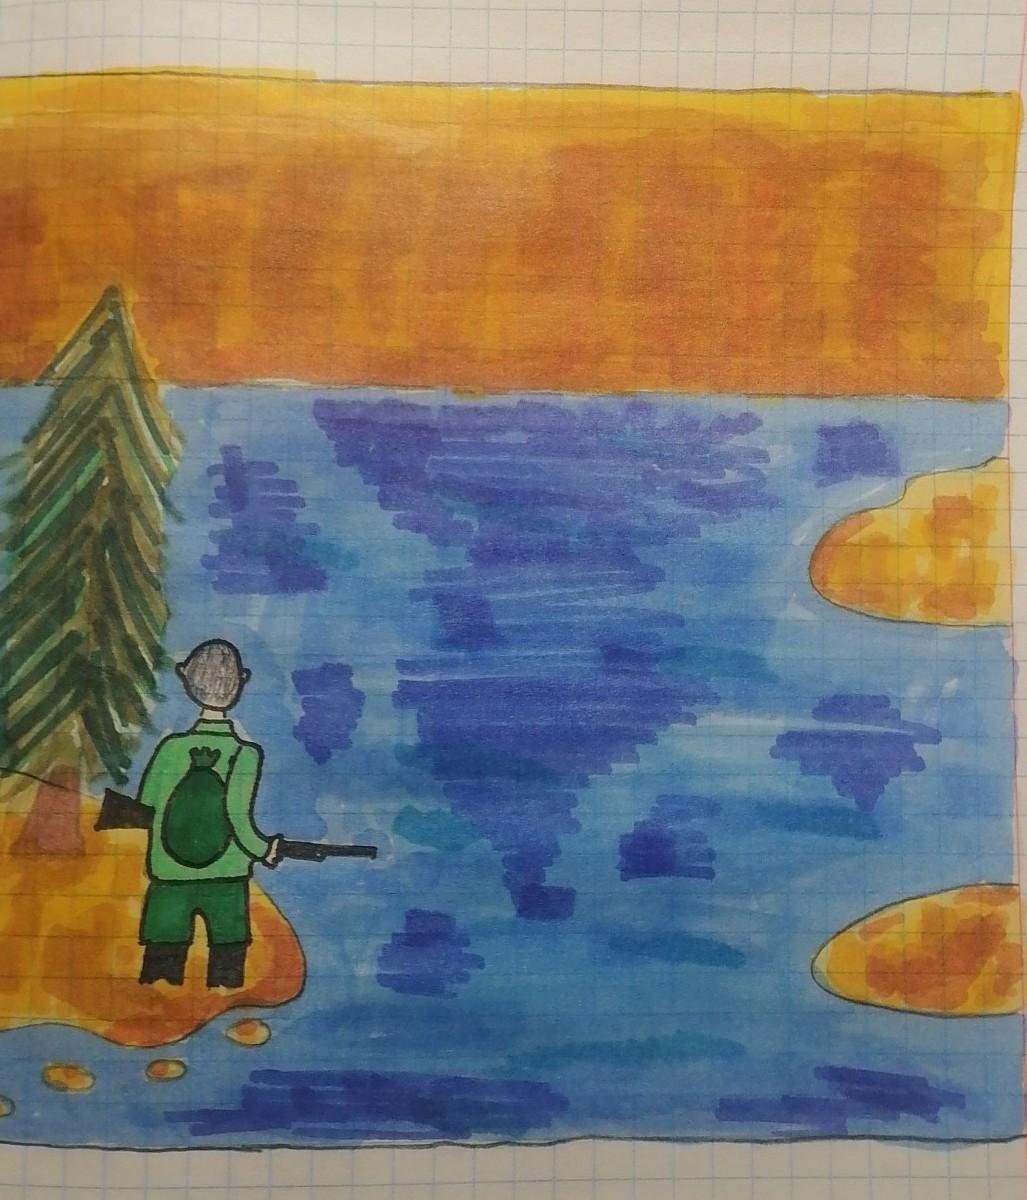 Фрагмент из васюткино озеро. Астафьев Васюткино озеро иллюстрации к рассказу. Рисунок к сказке Васюткино озеро. Рисунок к рассказу Васюткино озеро. Иллюстрация по Васюткино озеро Астафьев.